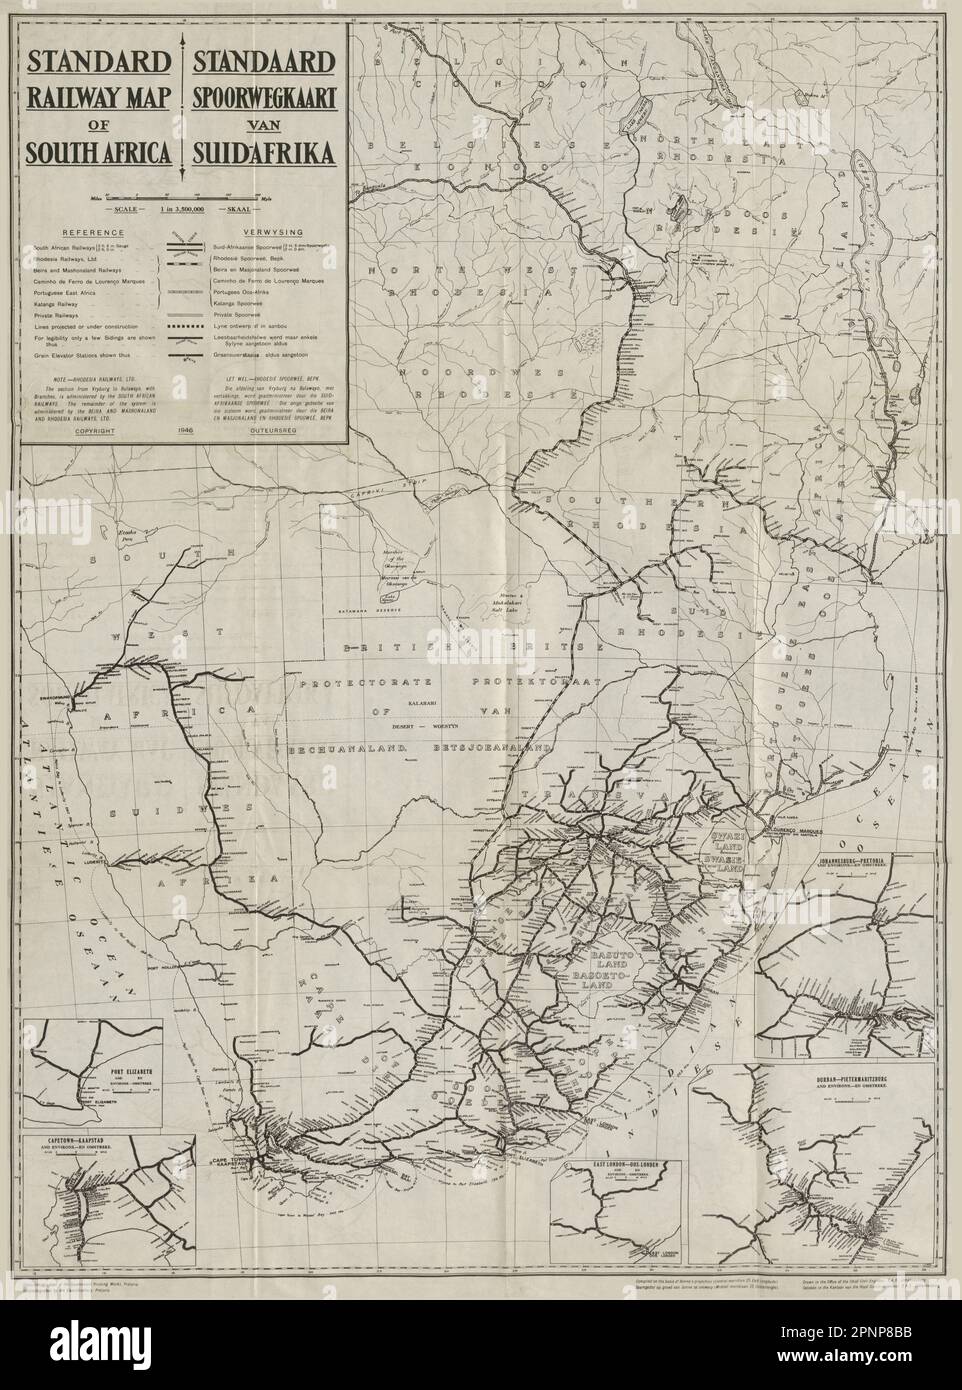 South Africa Standard Railway map. Suid-Afrika Standaard Spoorwegkaart 1946 Stock Photo